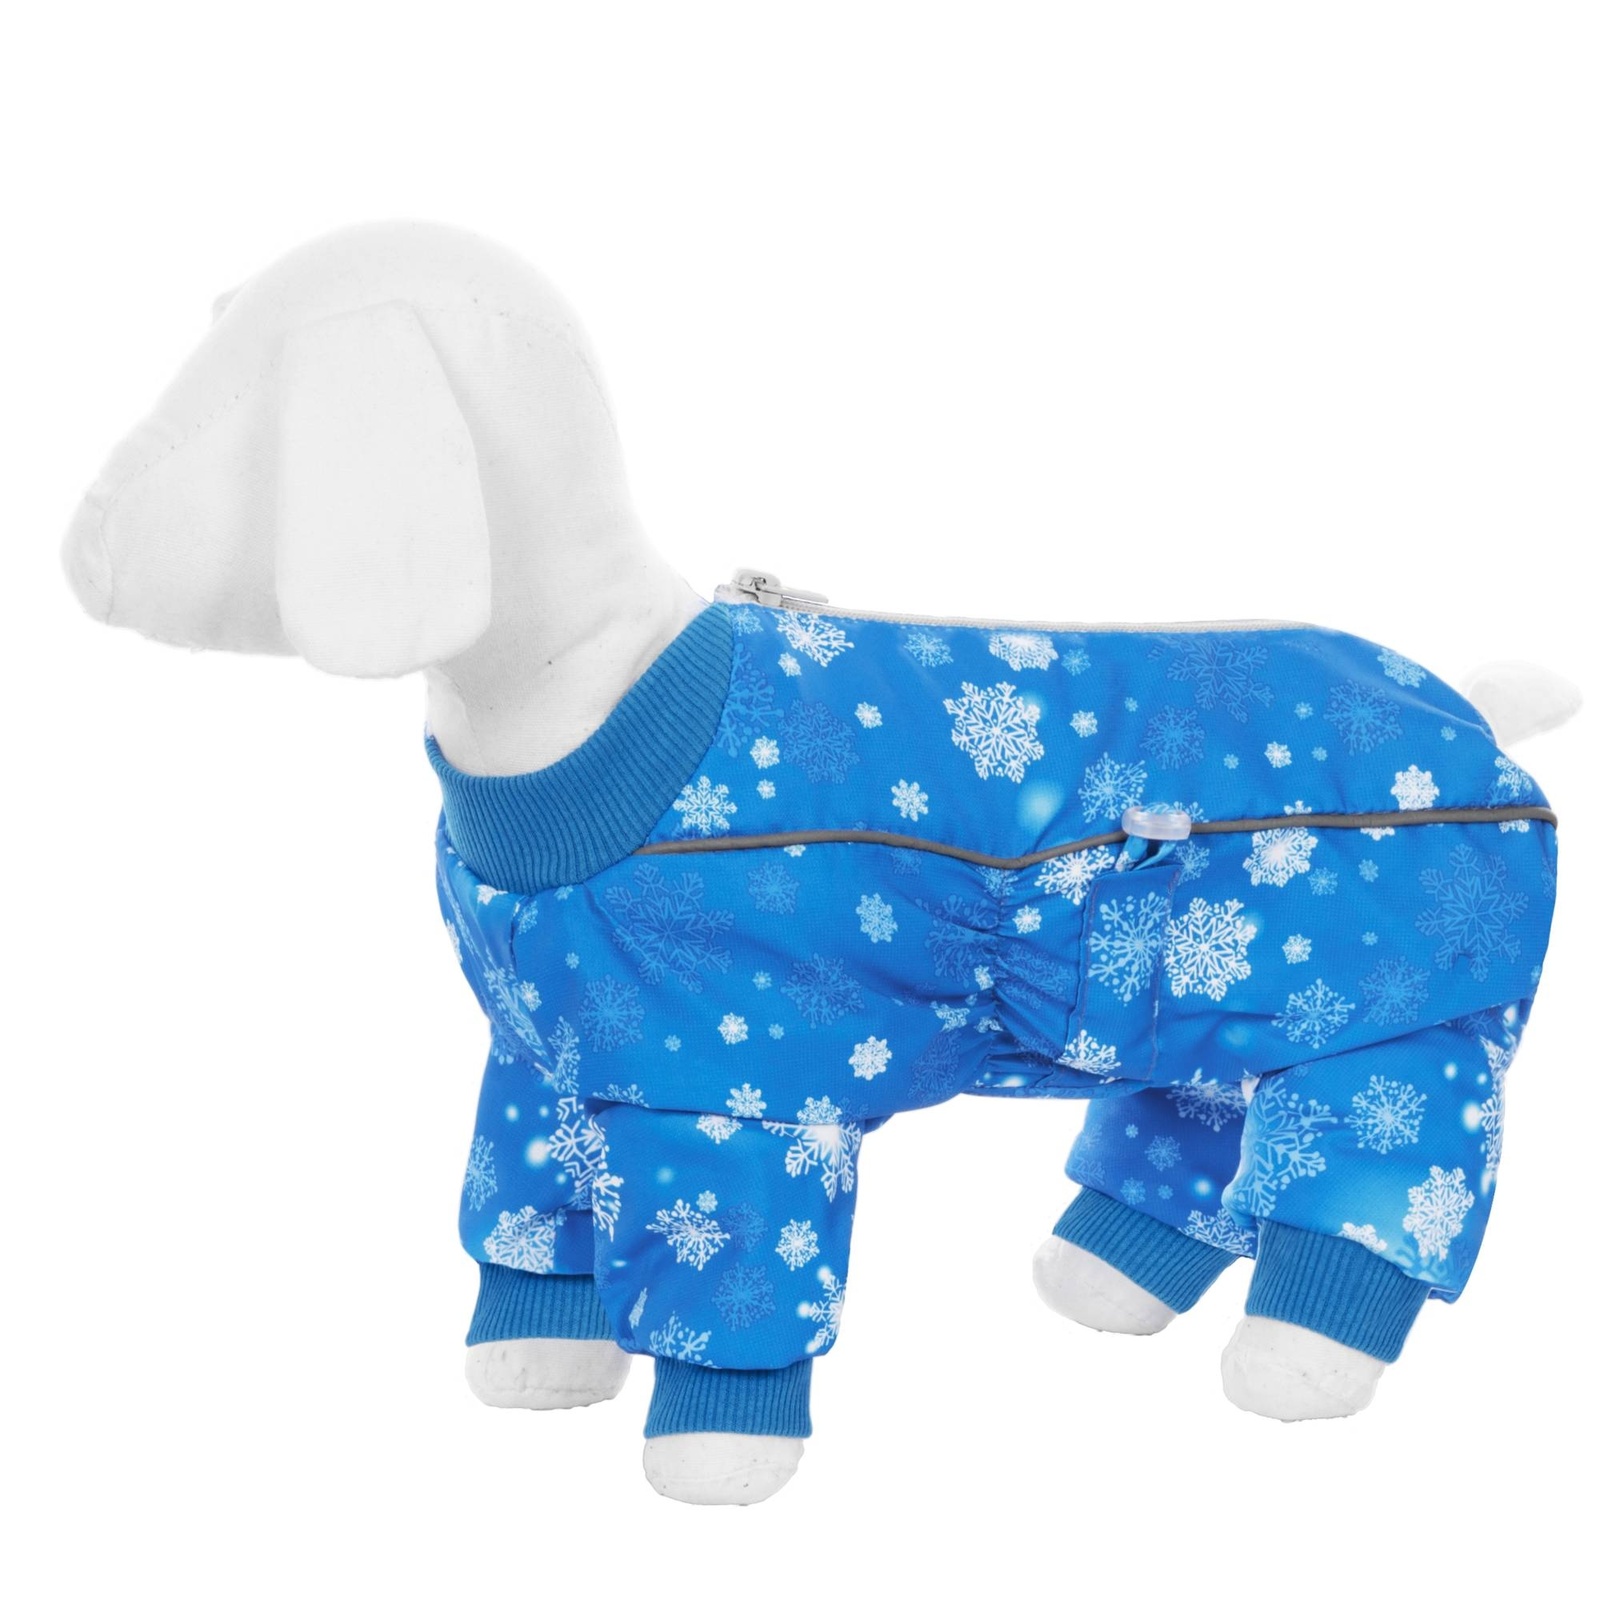 Yami-Yami одежда Yami-Yami одежда комбинезон для собак малых пород, на меху с рисунком снежинки (M) yami yami одежда yami yami одежда комбинезон для собак малых пород на меху с рисунком снежинки l